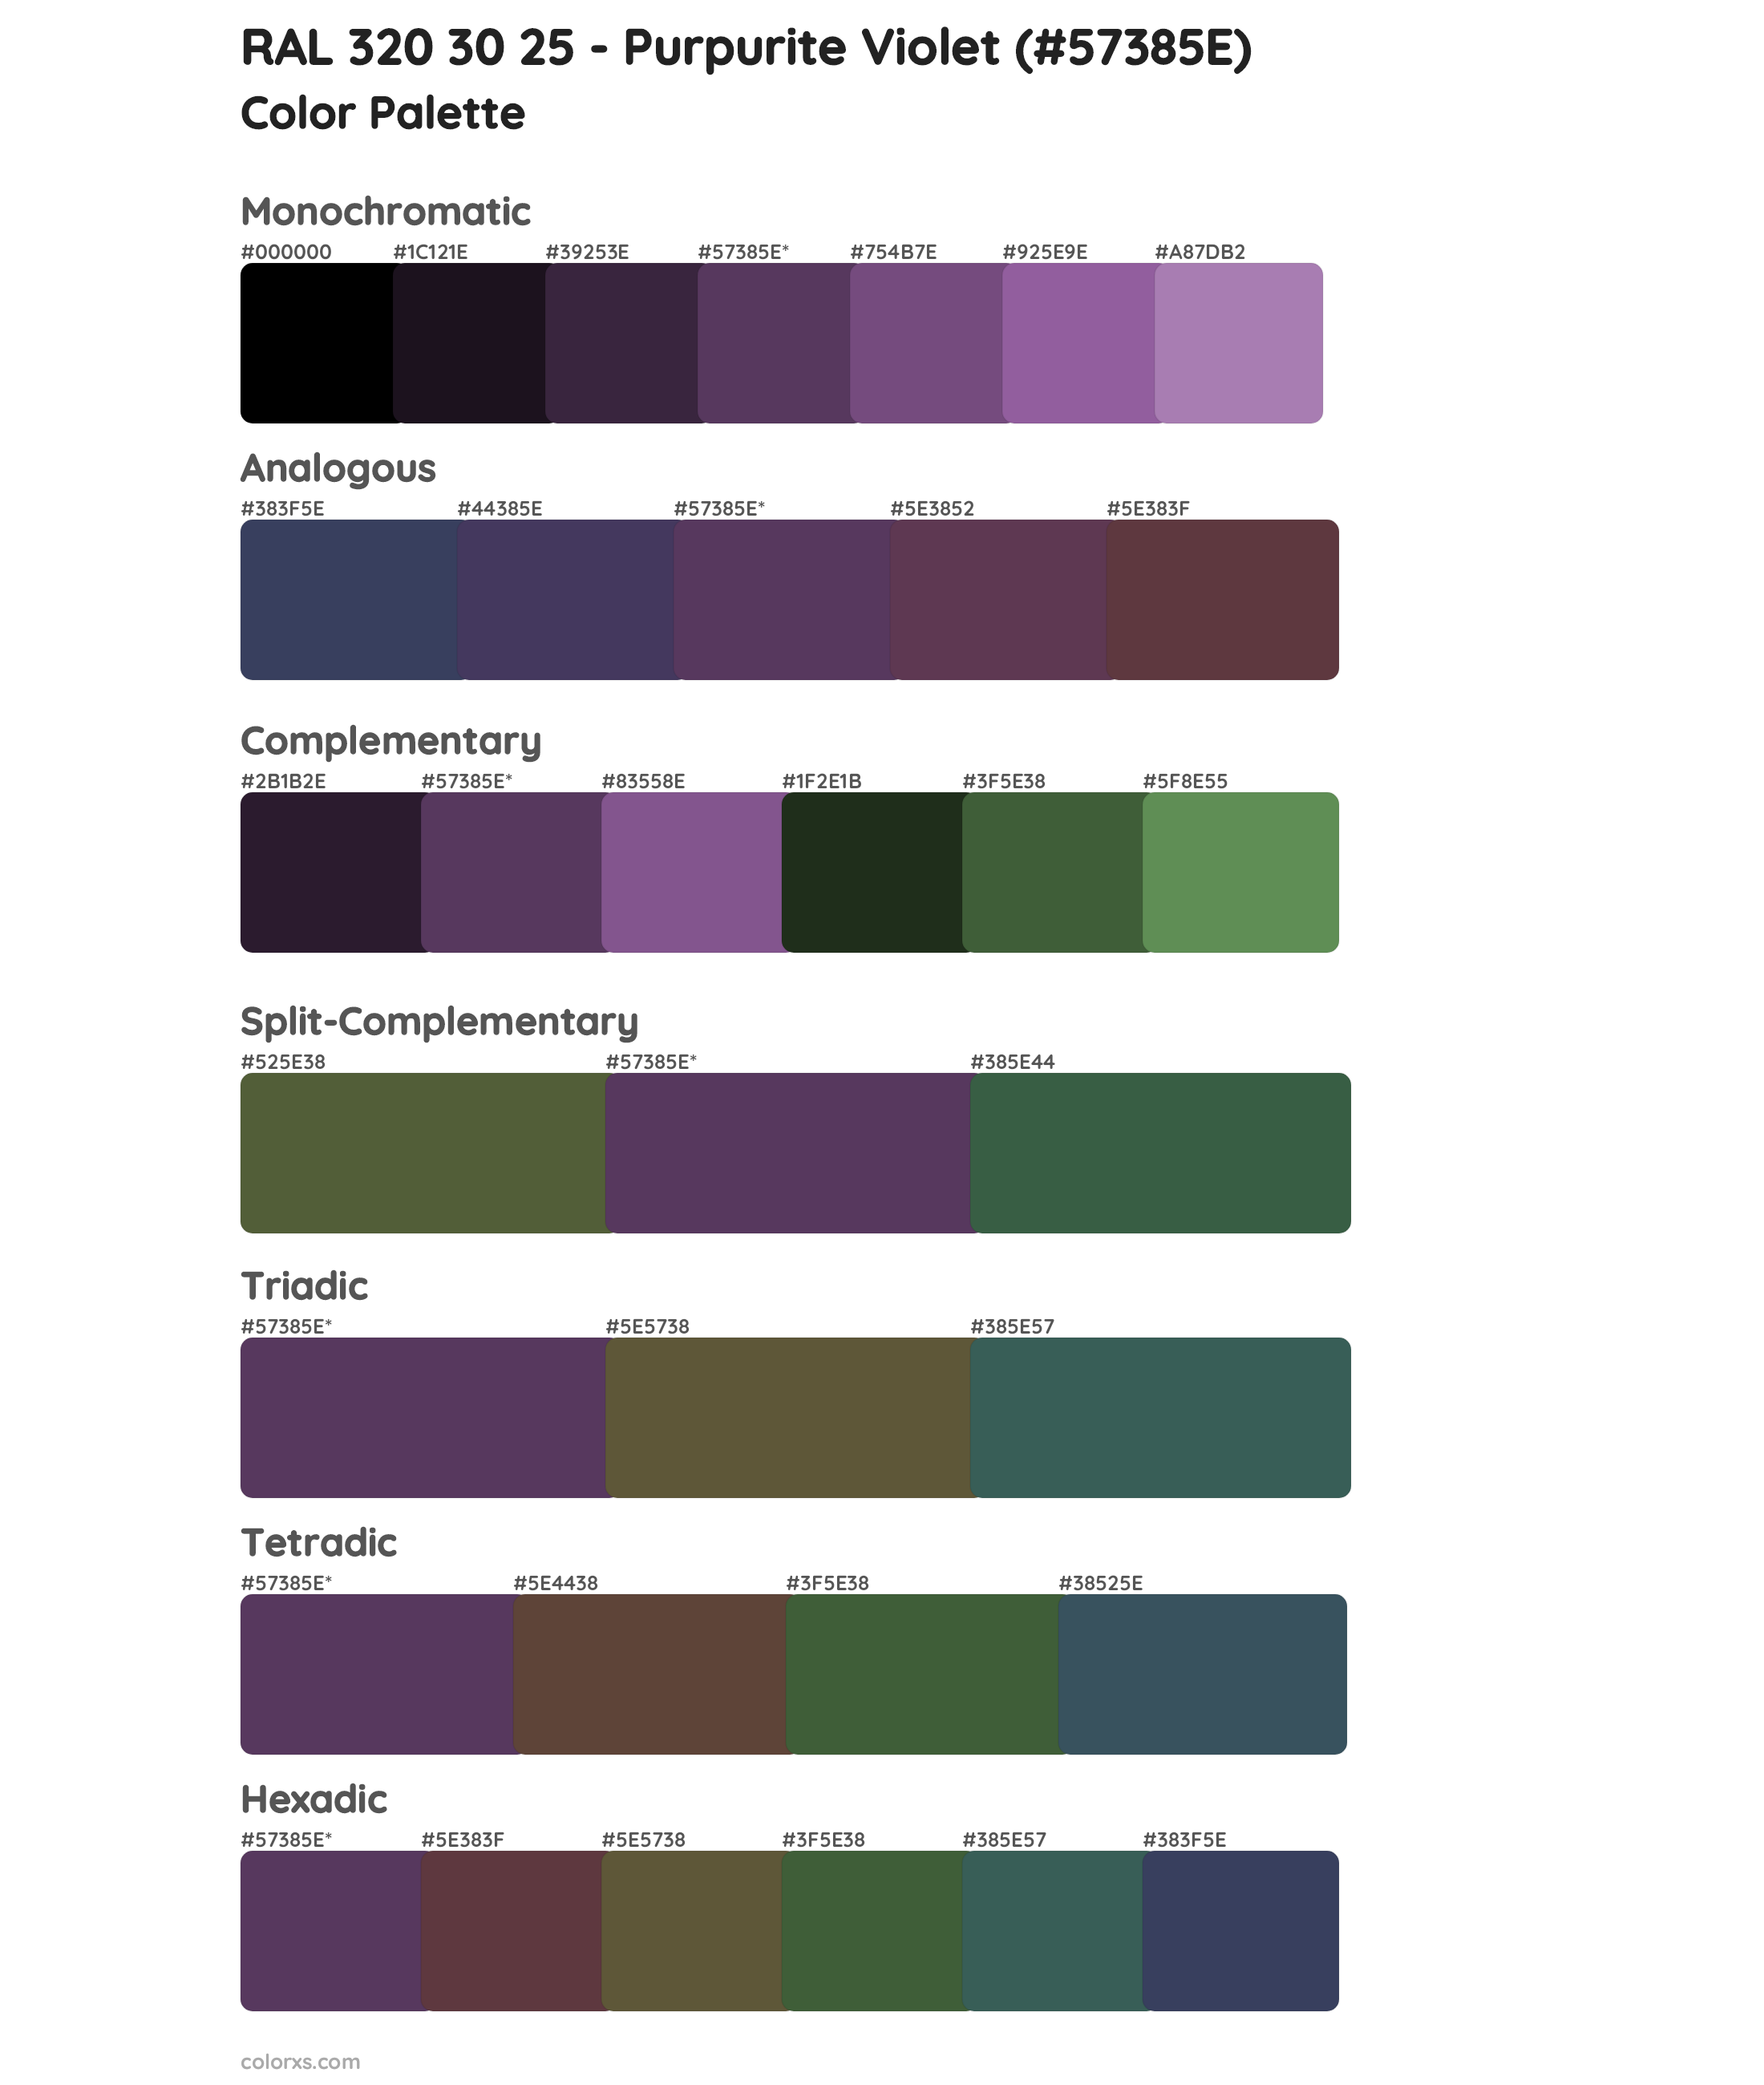 RAL 320 30 25 - Purpurite Violet Color Scheme Palettes